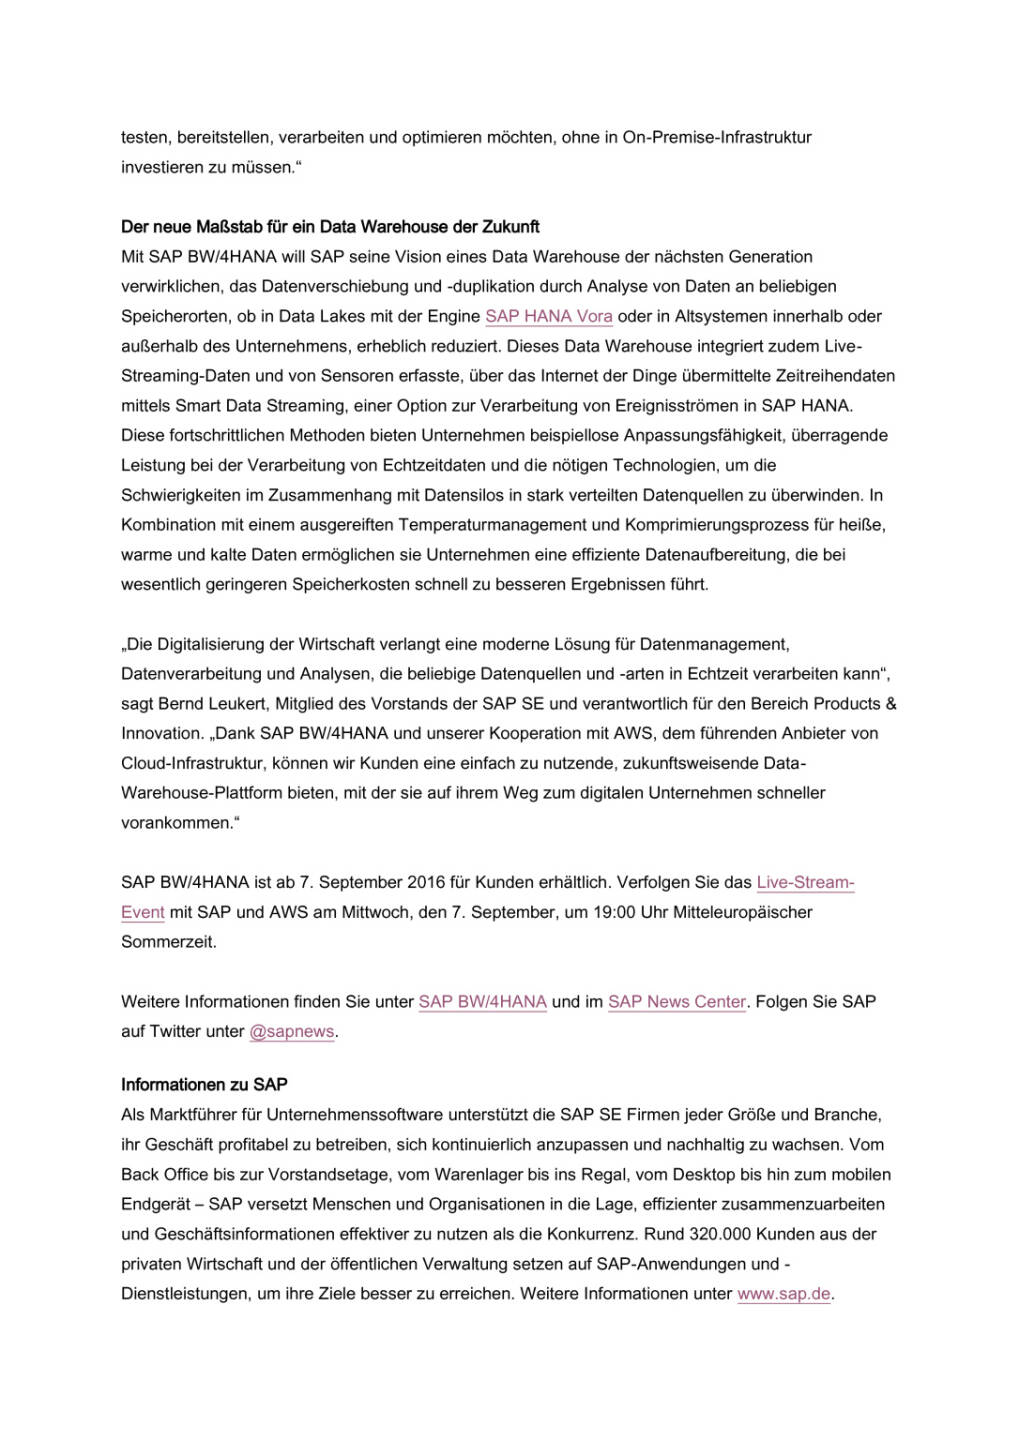 SAP modernisiert Data Warehousing, Seite 3/4, komplettes Dokument unter http://boerse-social.com/static/uploads/file_1697_sap_modernisiert_data_warehousing.pdf